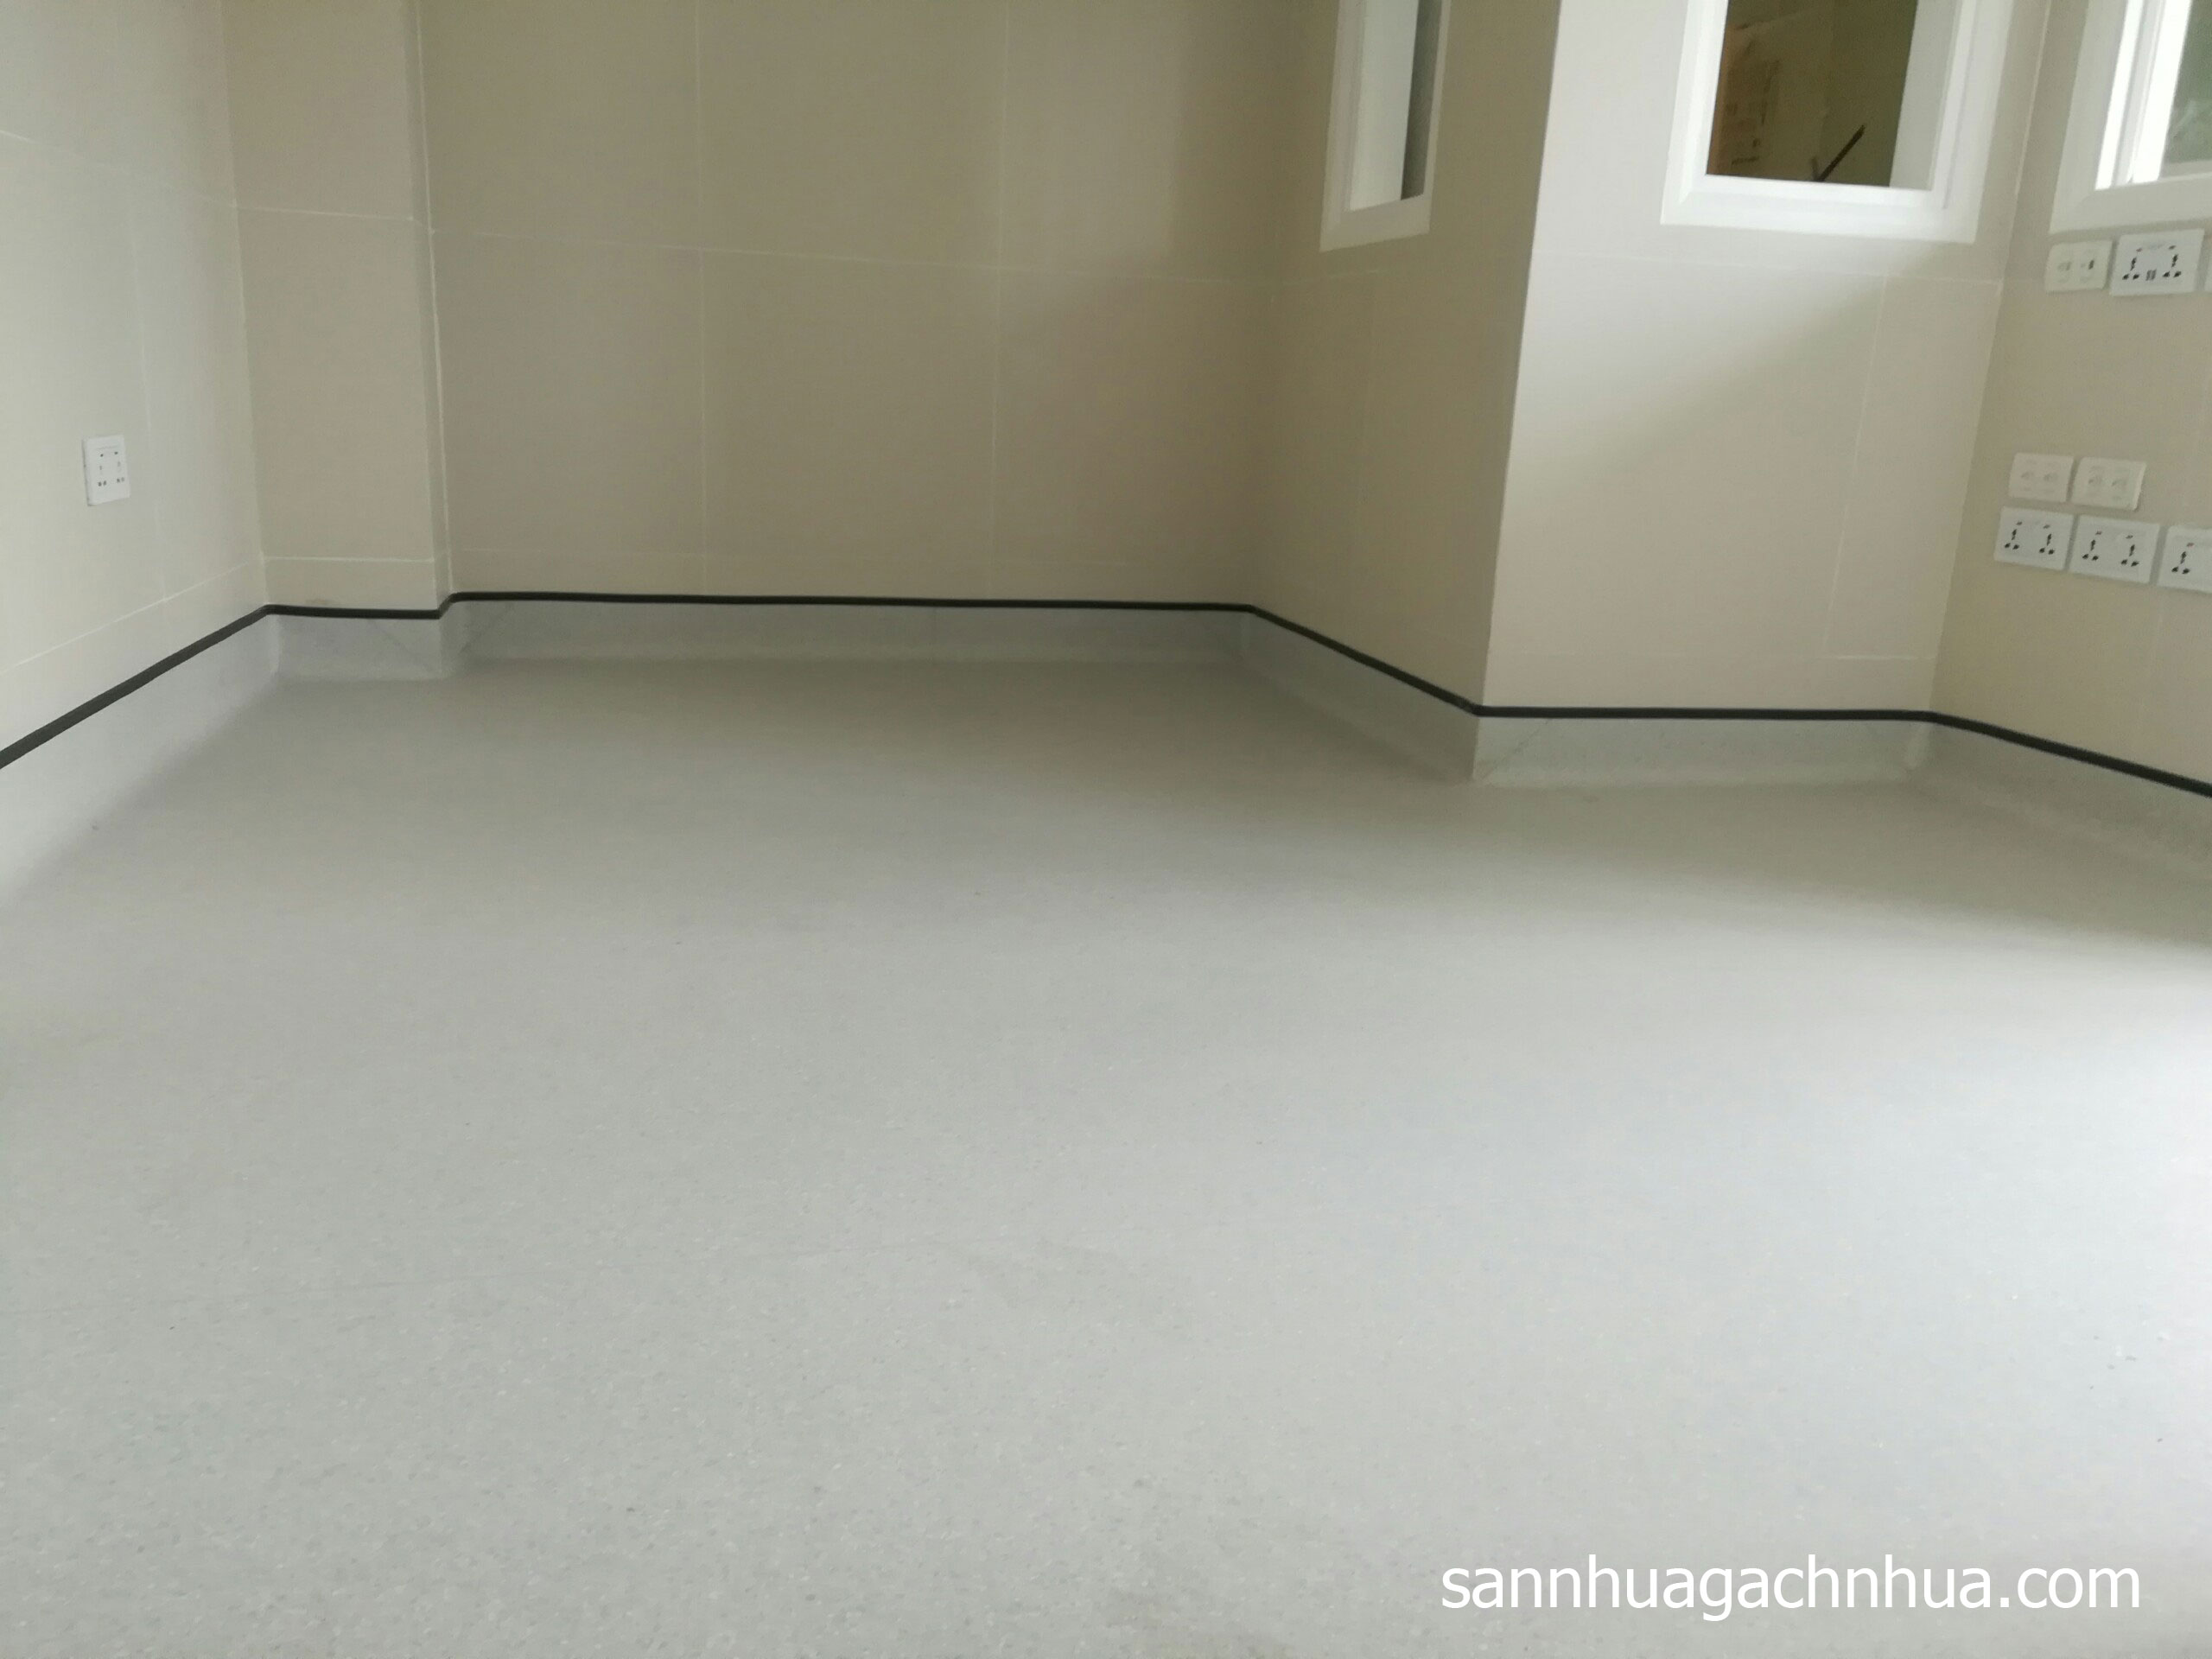 Công trình sàn vinyl bệnh viện cho phòng khám Family Medical Practice